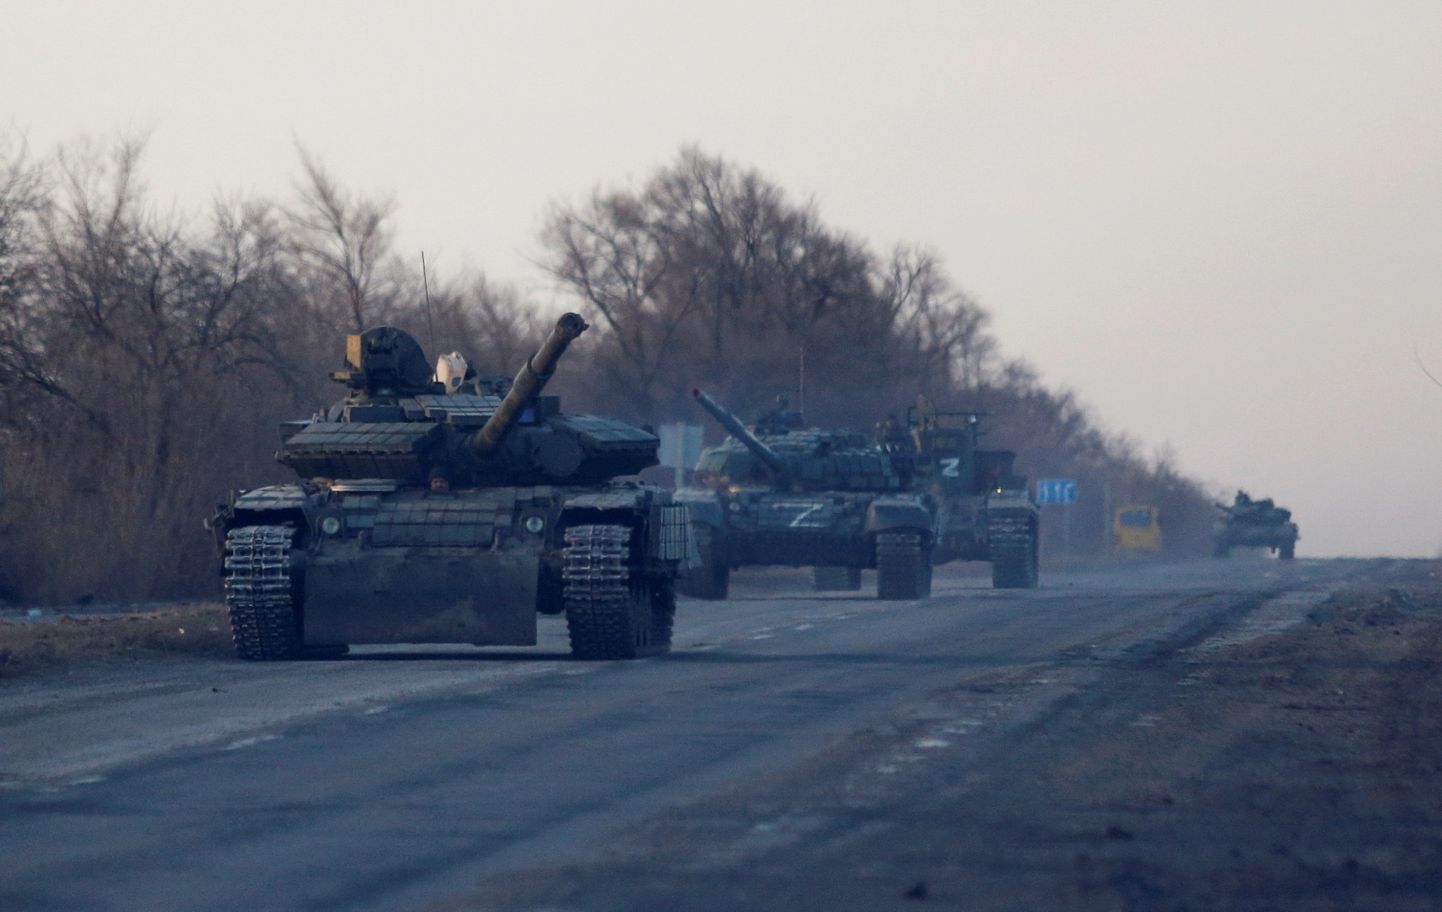 Vene tankide liikumisest saab Ukrainas teada anda vestlusrobotile, kes küsib vajalikud küsimused ning saadab info hetkega edasi õigesse kohta.